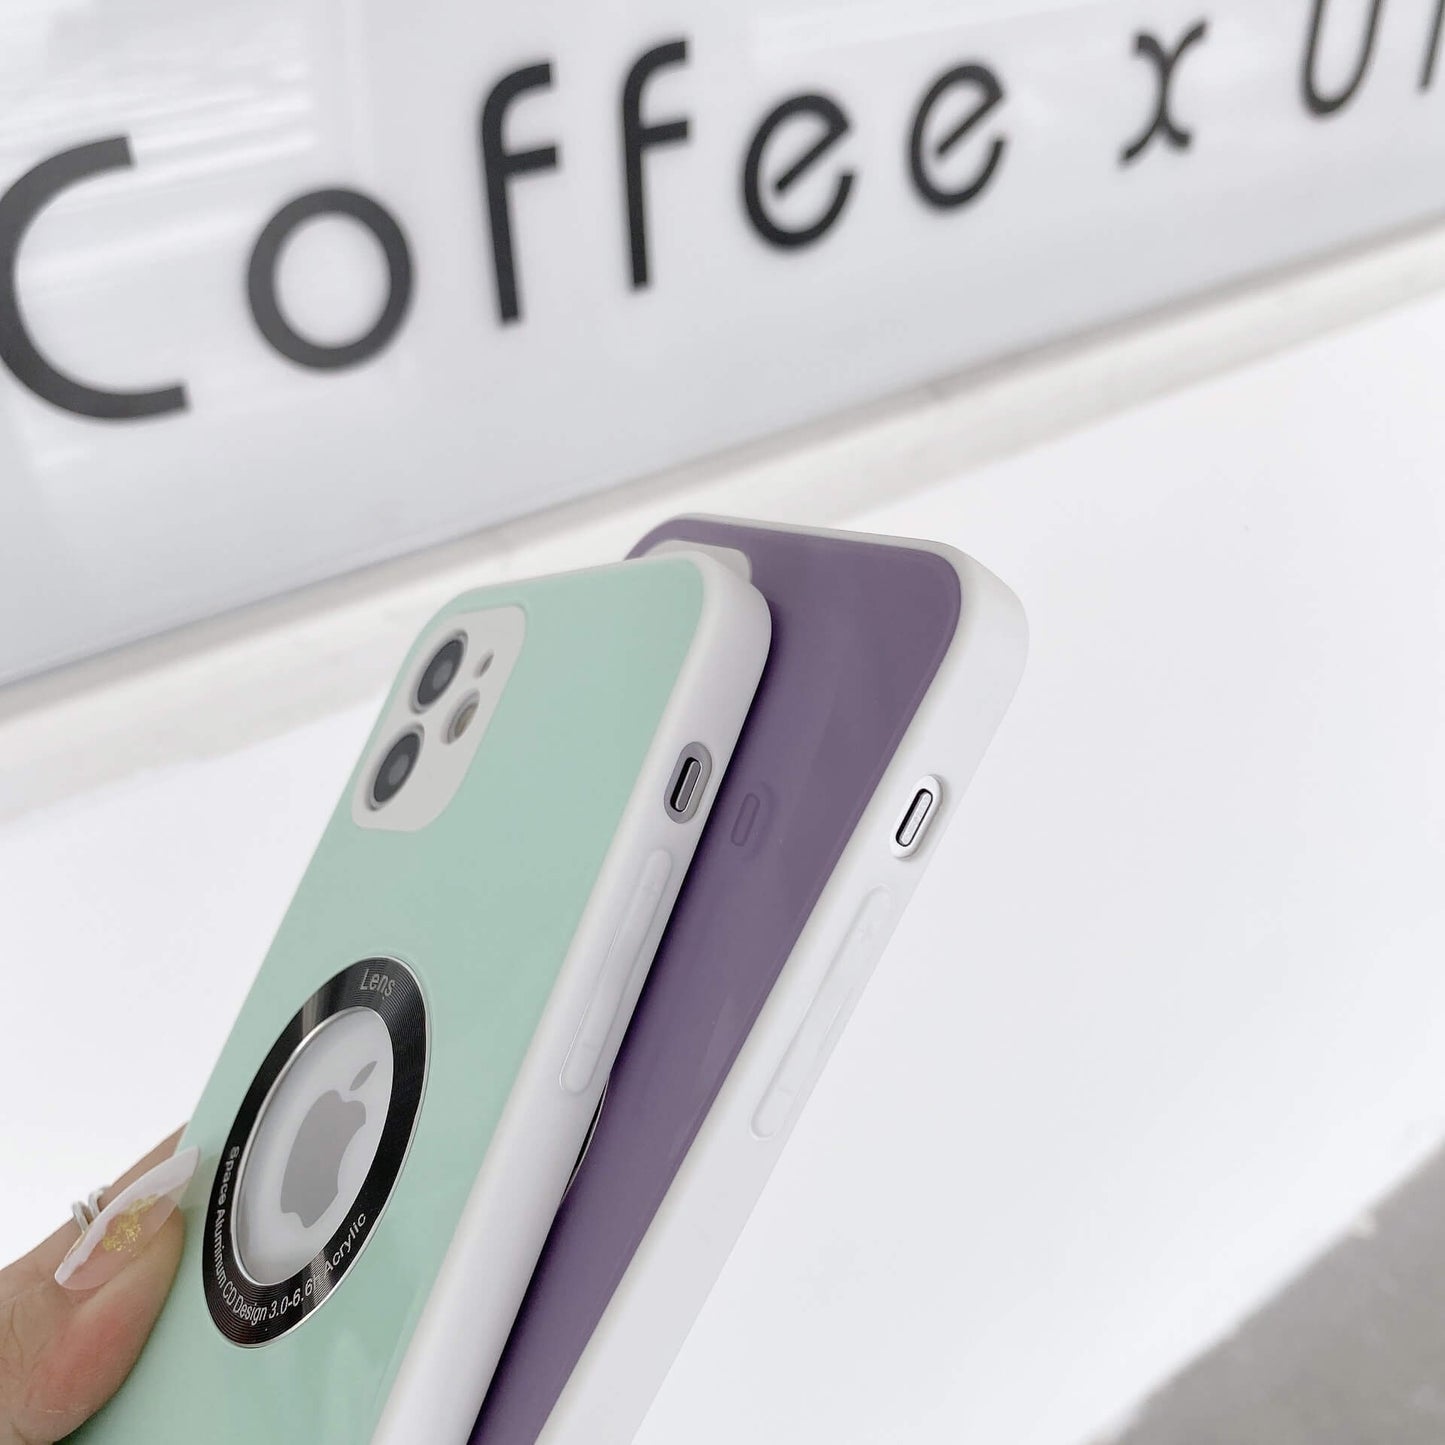 Coque pour iPhone en forme de fenêtre en verre de couleur bonbon (gris lavande, rose, rouge, cyan clair, violet clair